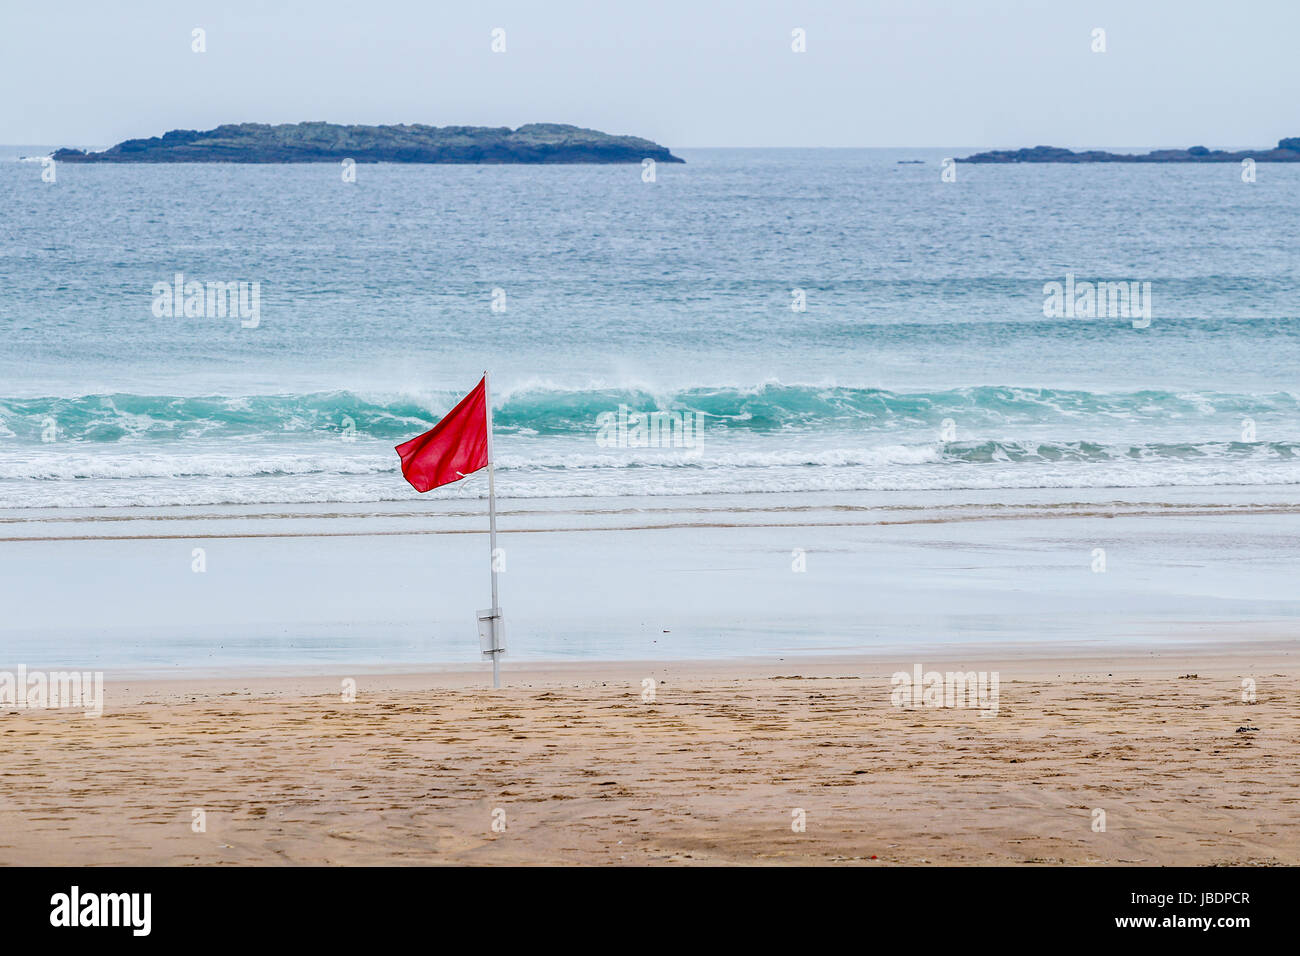 Rote Fahne am Strand von Portrush, Nordirland unter Angabe einer Gefahr wie hohe Brandung oder starke Strömungen Stockfoto